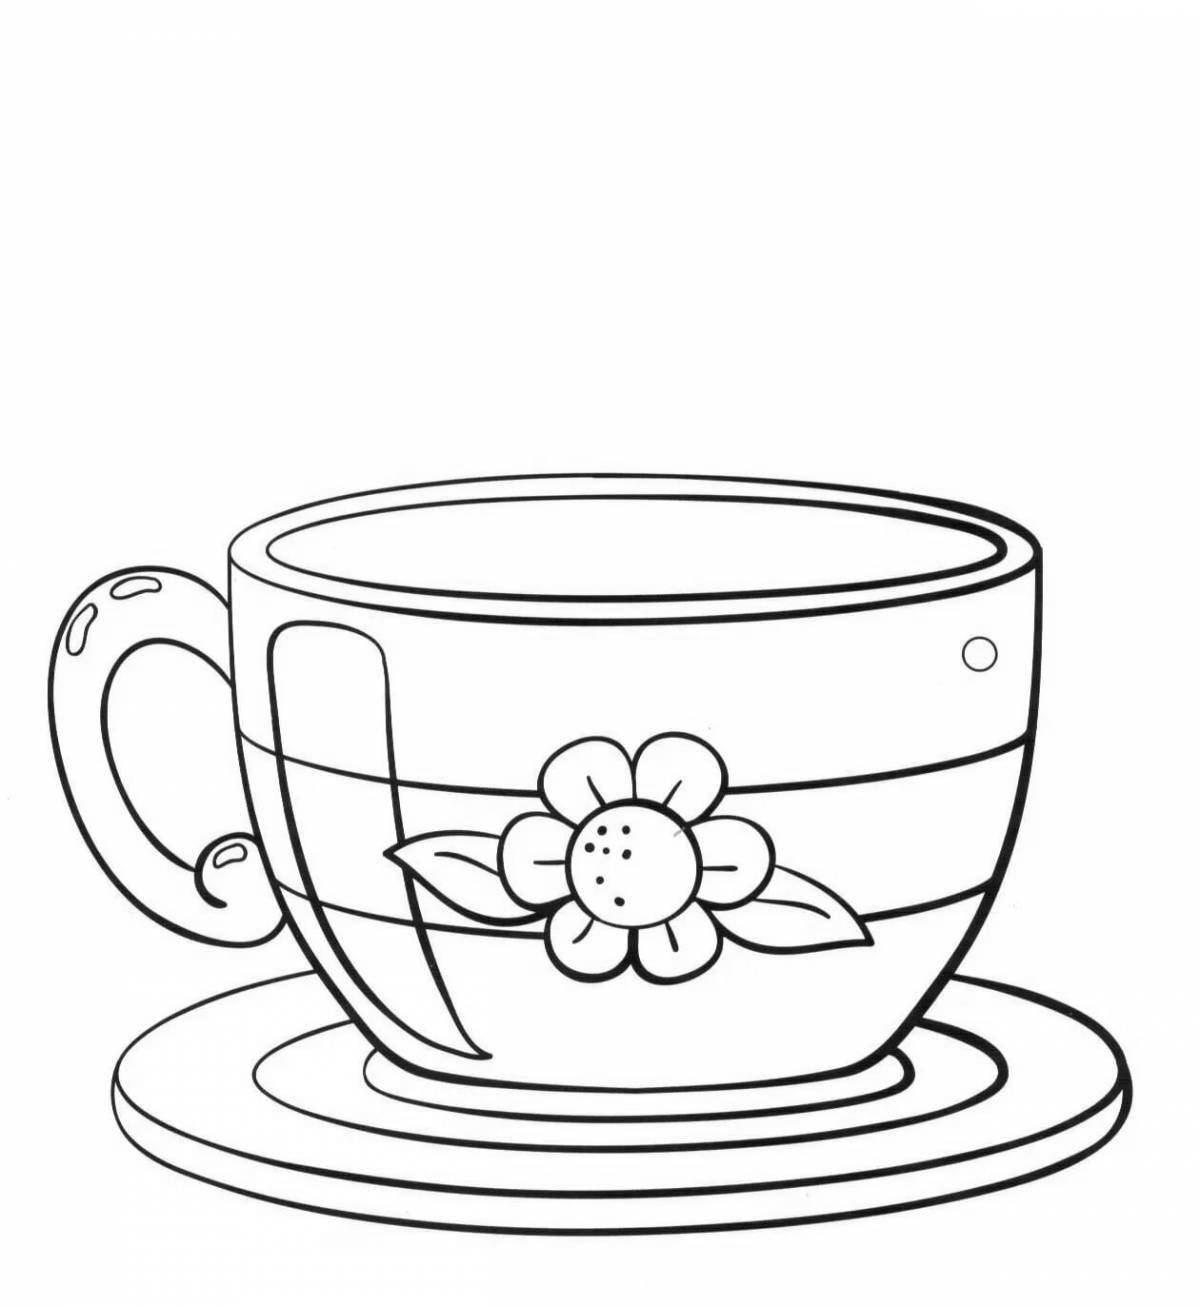 Сказочная чашка чая раскраска для детей